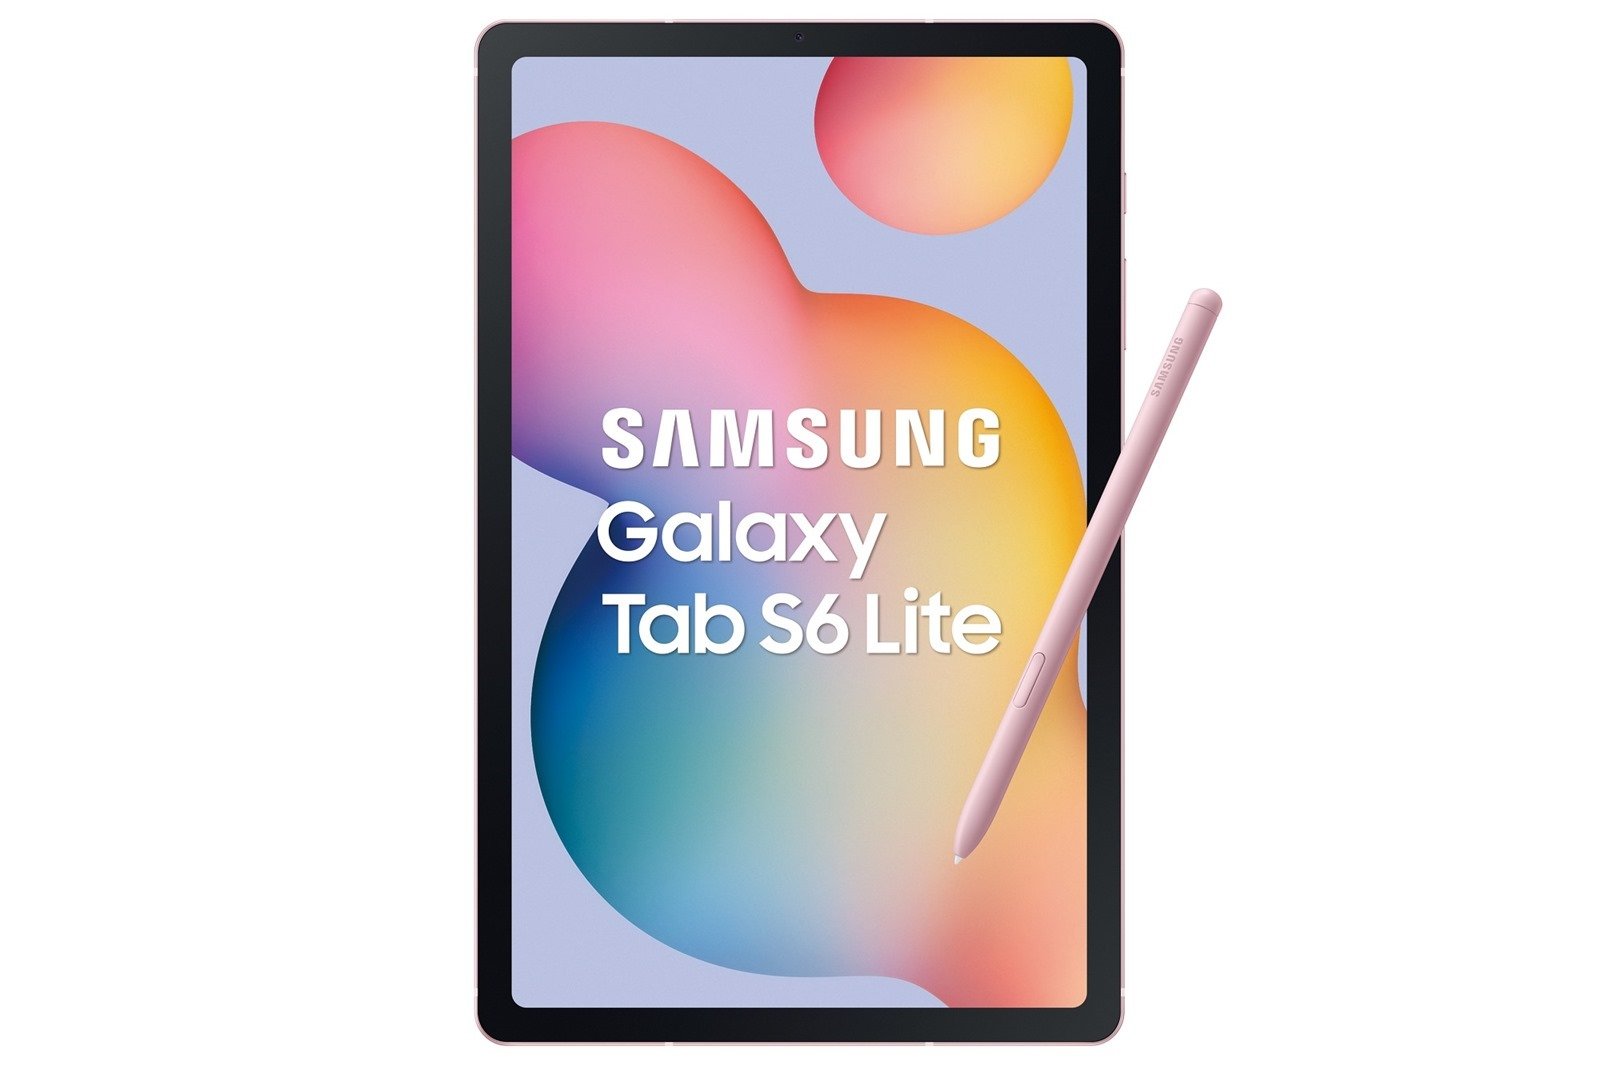 三星推出 Galaxy Tab S6 Lite 為學習注入新動力 超大 81.1% 螢幕占比、全新升級 S Pen 新寫來潮 生活需求一把罩 @3C 達人廖阿輝